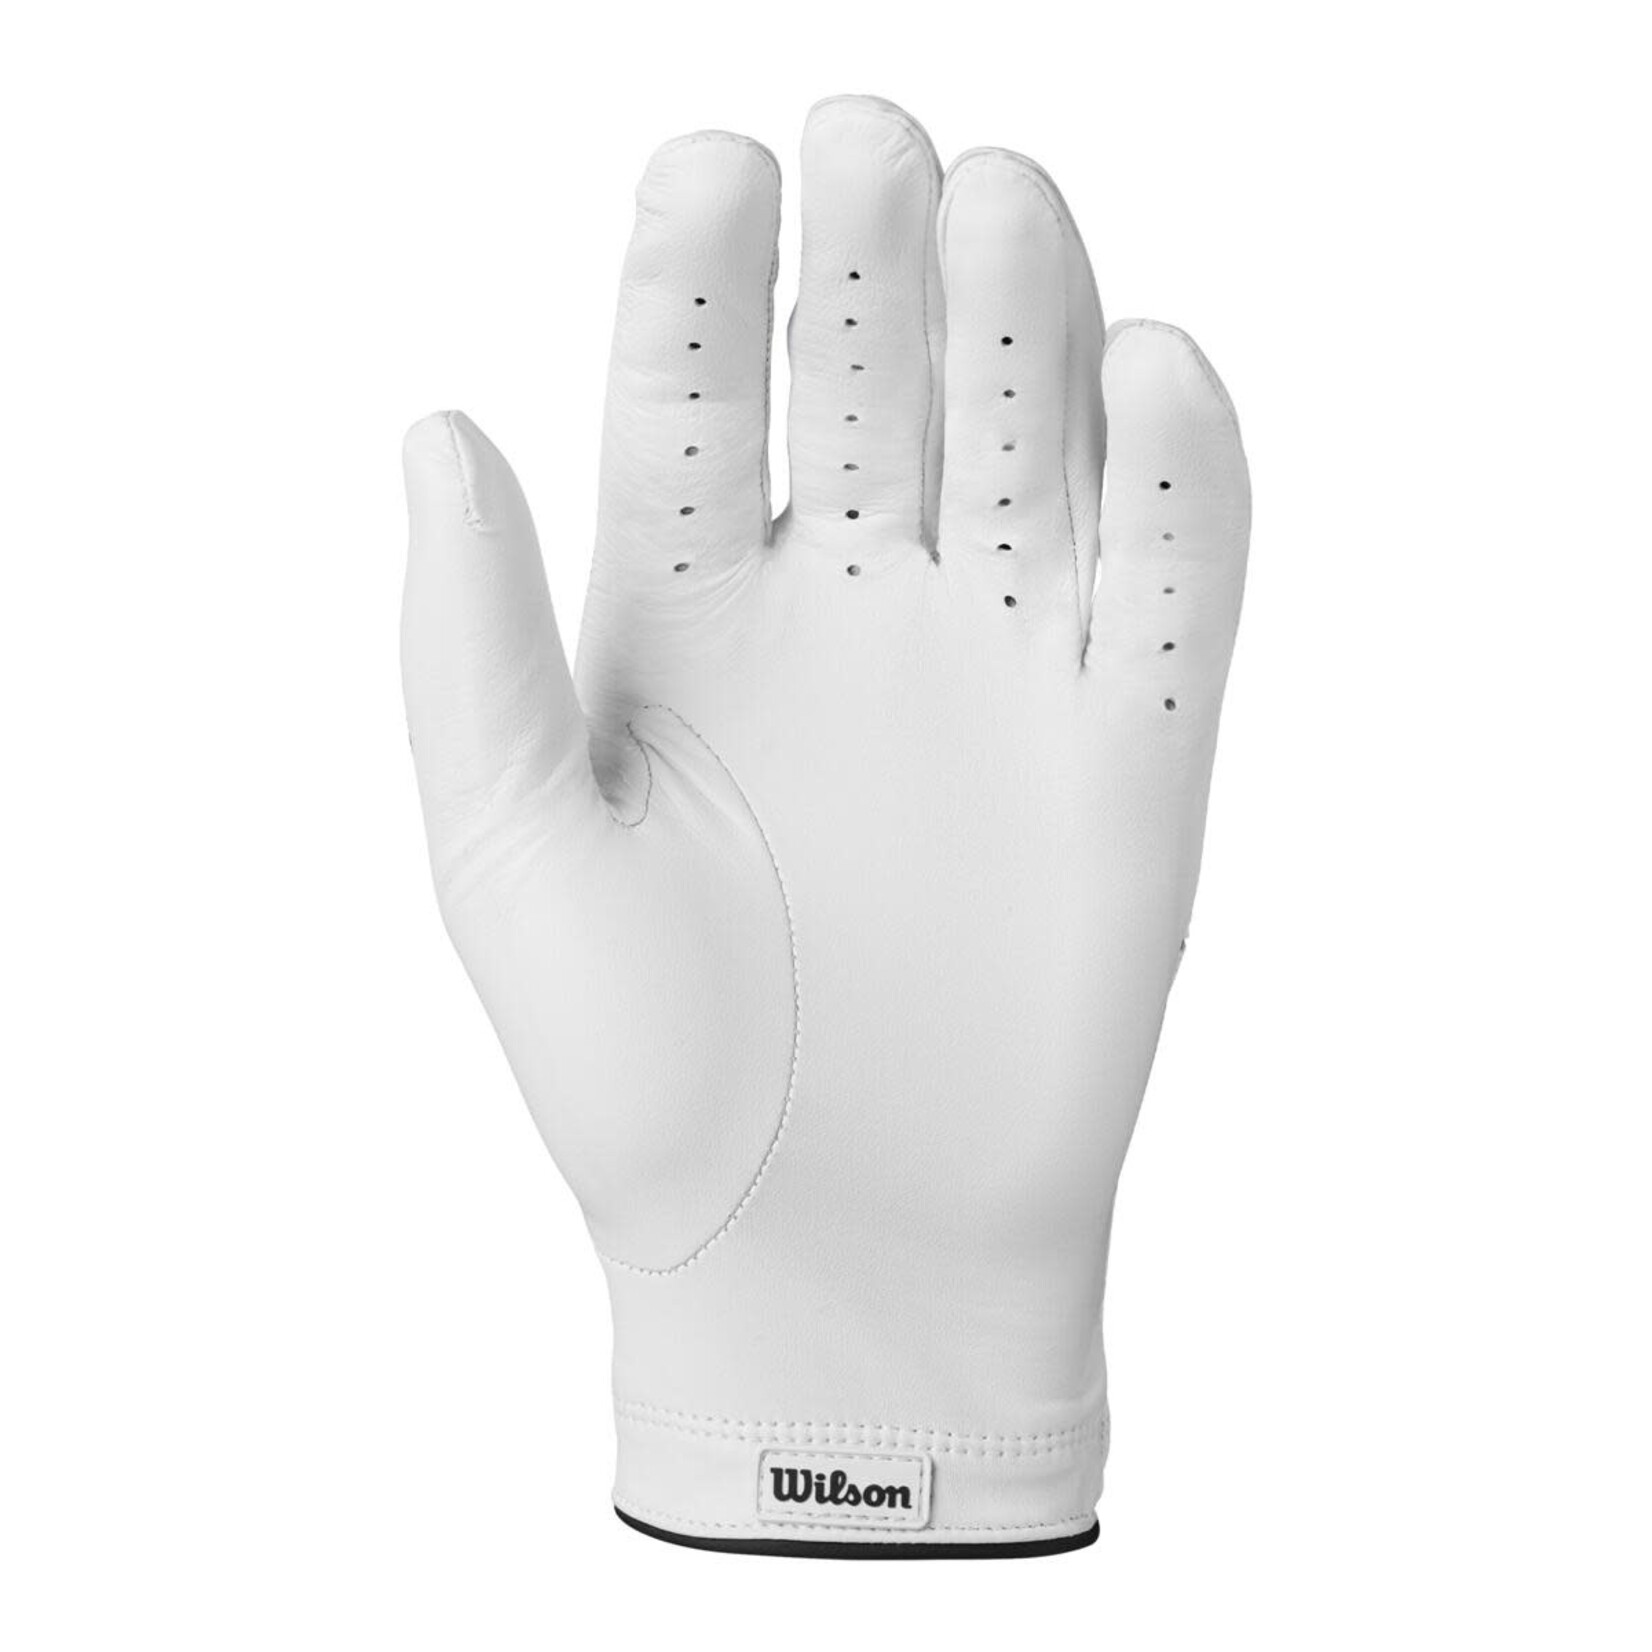 Wilson Wilson Staff Model Glove